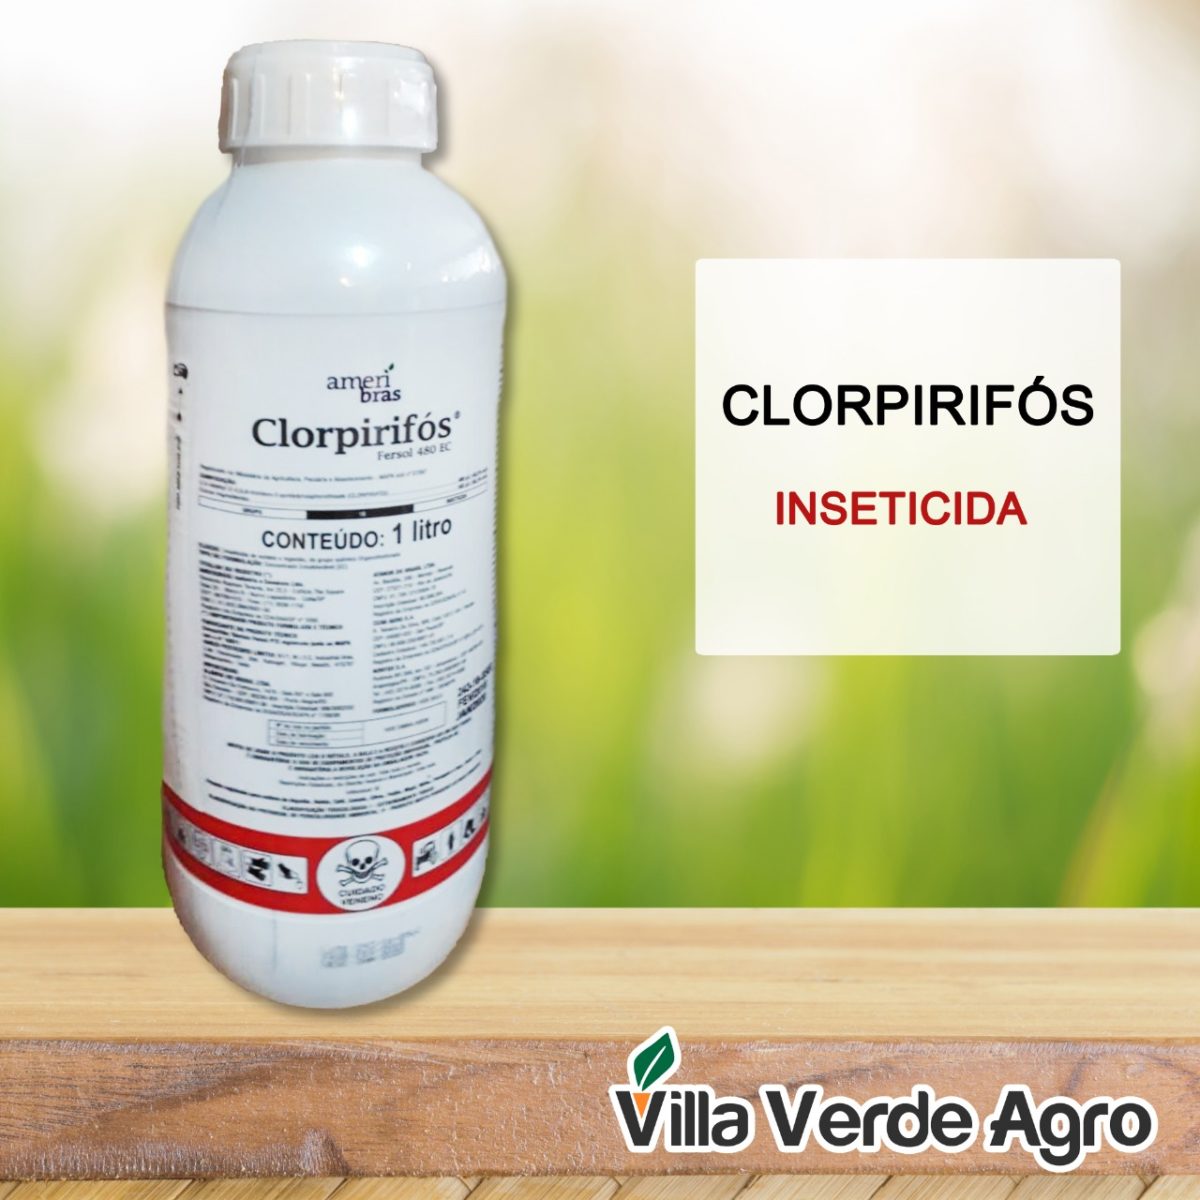 Imagem de divulgação apresenta o produto Clorpirifós, vendido em uma embalagem redonda branca; embaixo está o logo da Villa Verde Agro, que comercializa o produto no Brasil